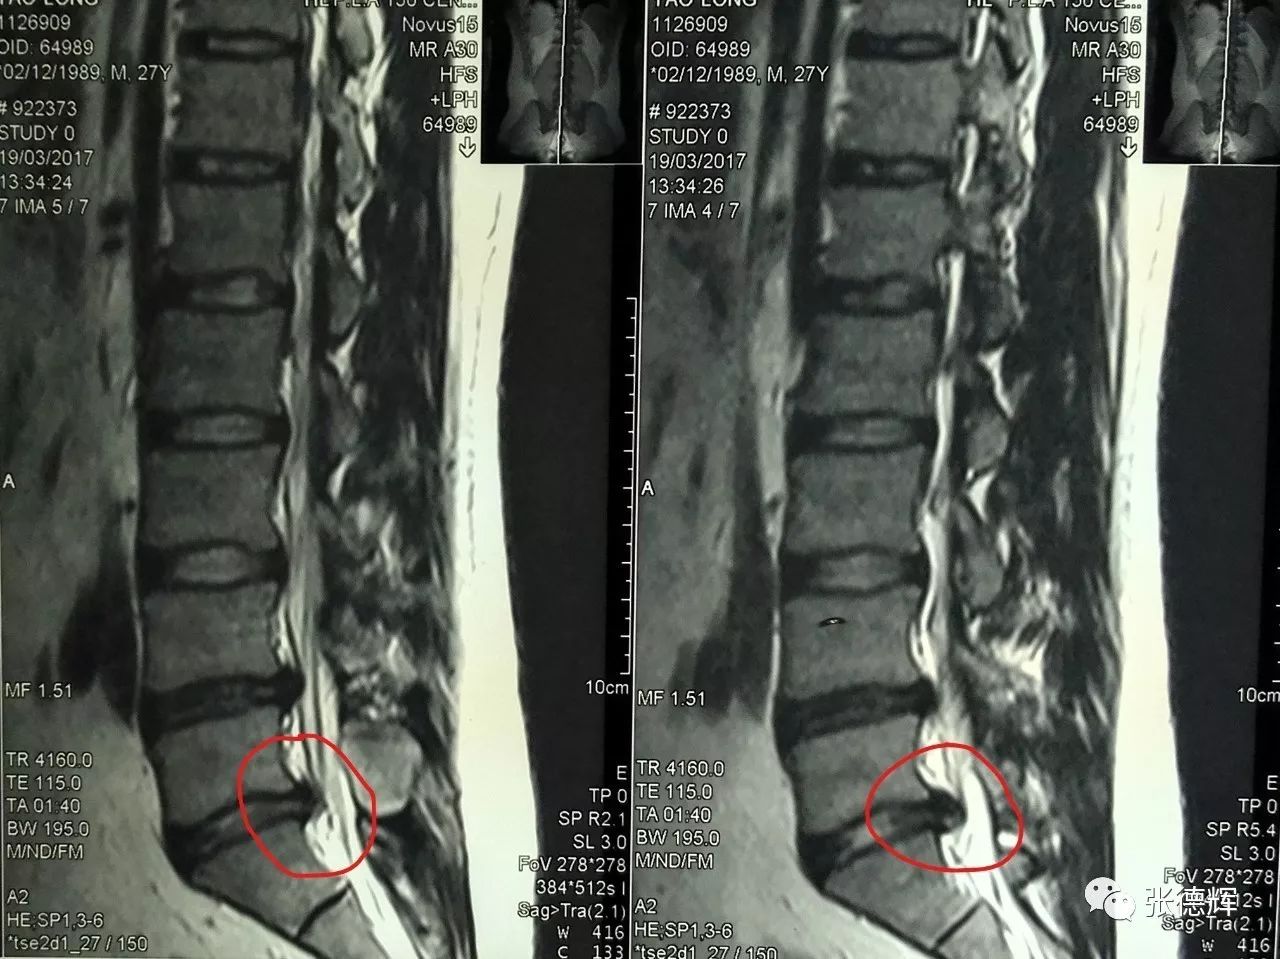 拇趾背伸肌力正常  他的影像学检查提示:腰4-5,腰5-骶1均有椎间盘突出